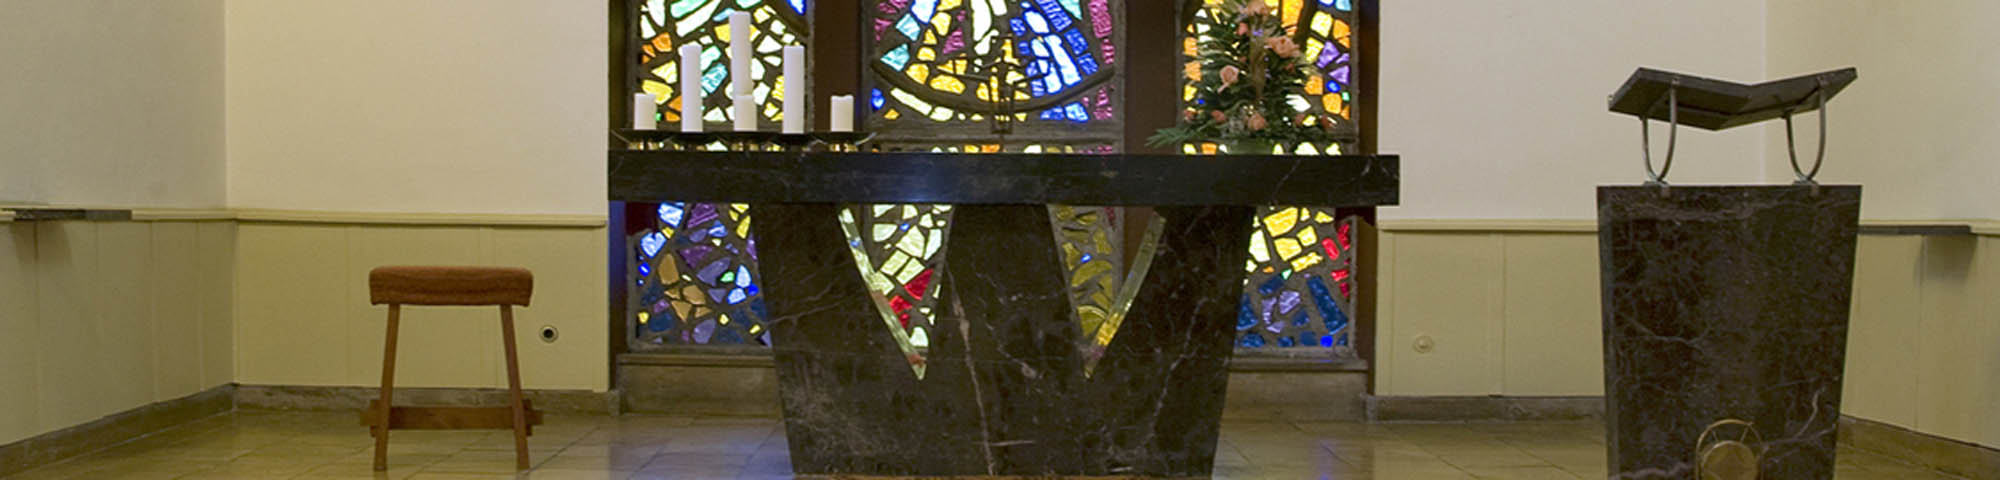 Altartisch der Marienkirche Markranstädt. Im Hintergrund sind bunte Glasfenster zu sehen.